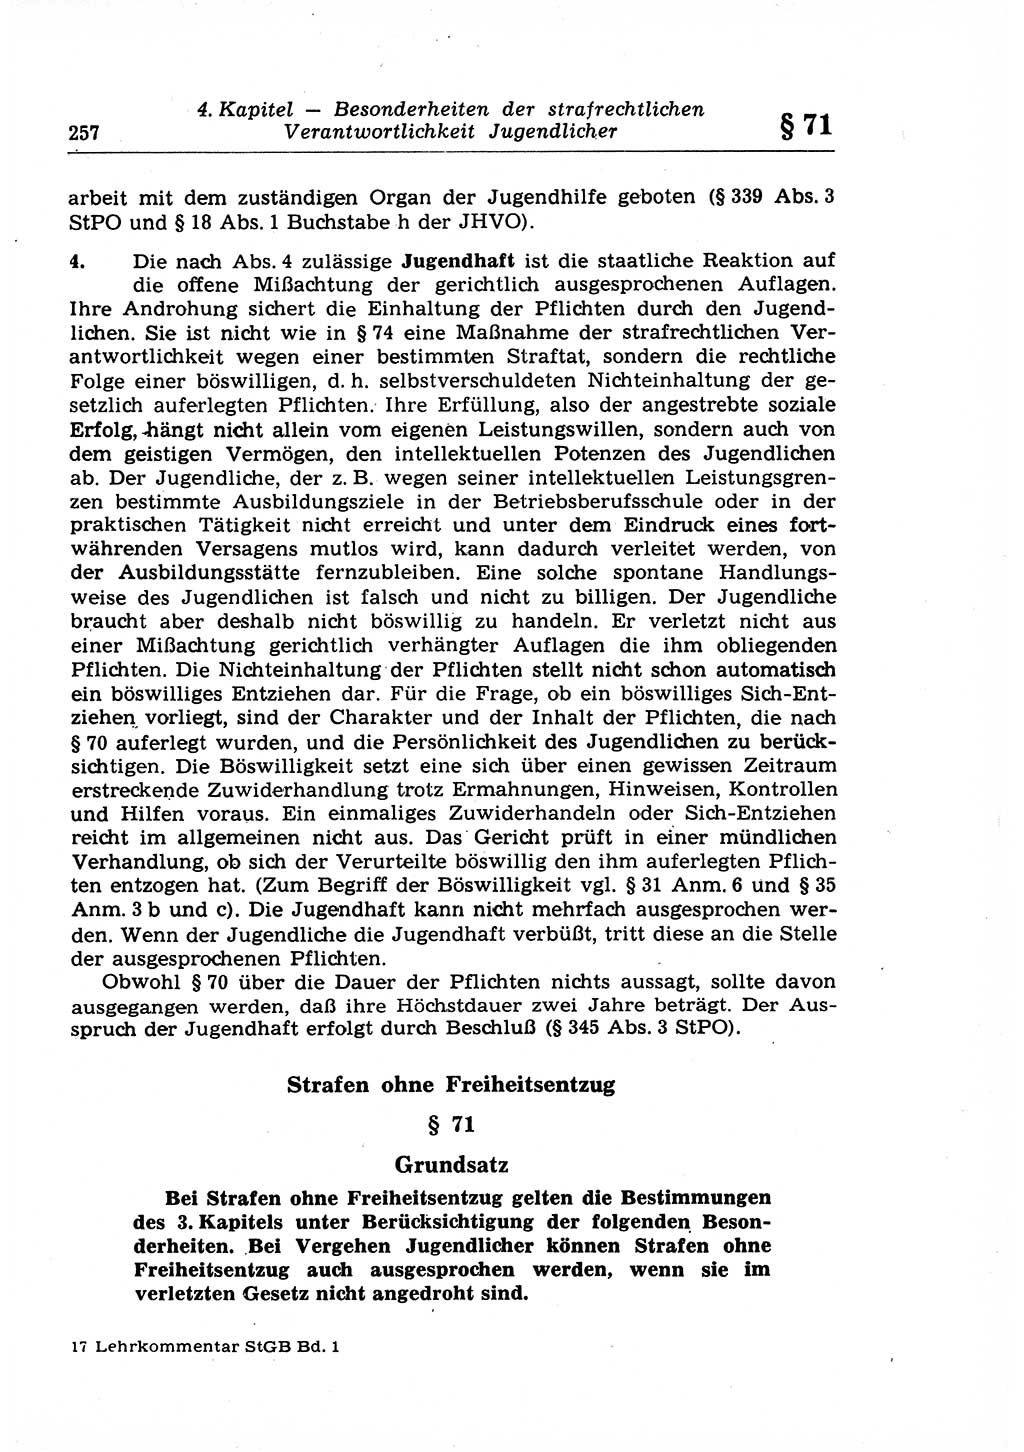 Strafrecht der Deutschen Demokratischen Republik (DDR), Lehrkommentar zum Strafgesetzbuch (StGB), Allgemeiner Teil 1969, Seite 257 (Strafr. DDR Lehrkomm. StGB AT 1969, S. 257)